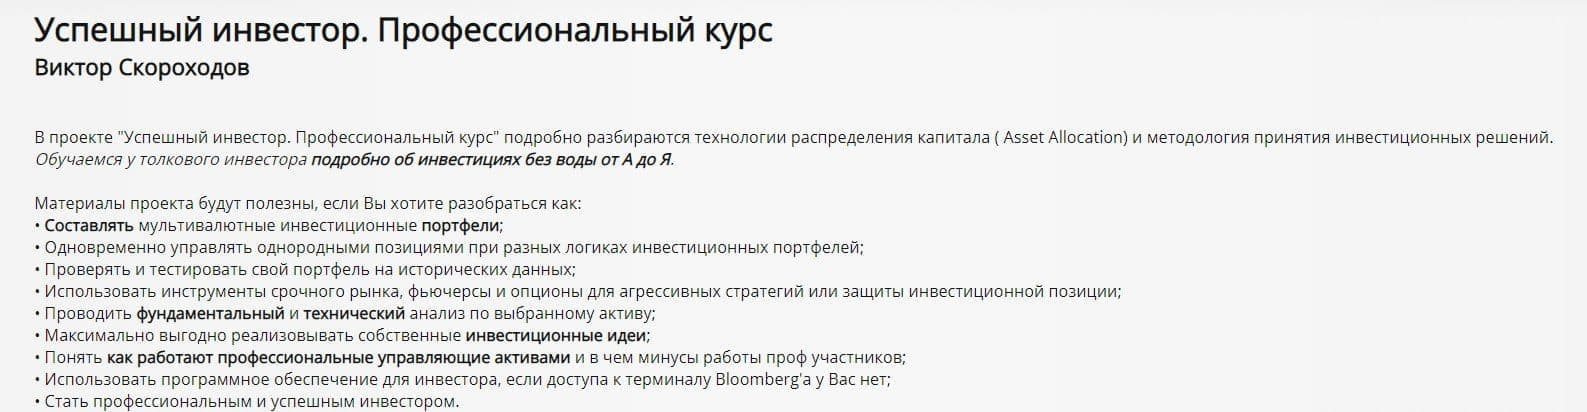 Курс Успешный инвестор Виктор Скороходов